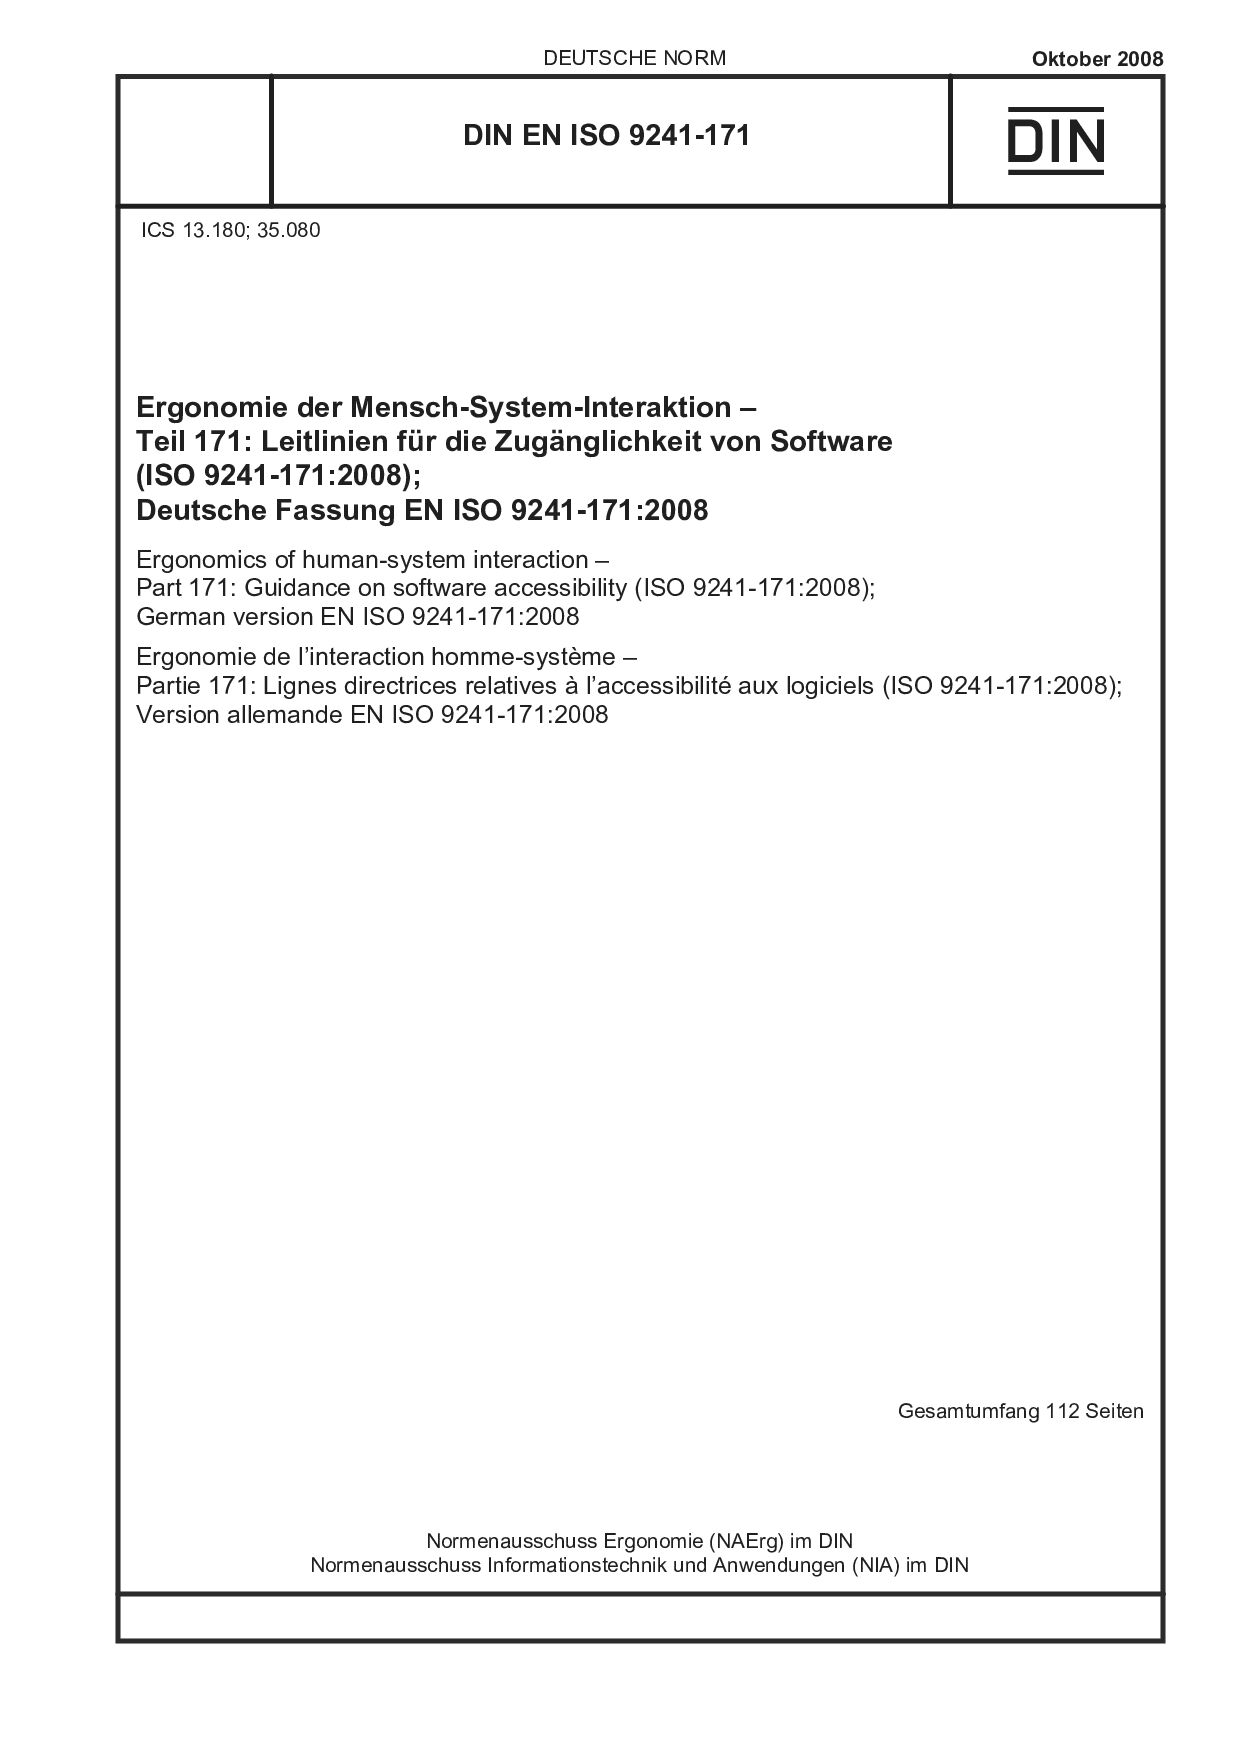 DIN EN ISO 9241-171:2008封面图